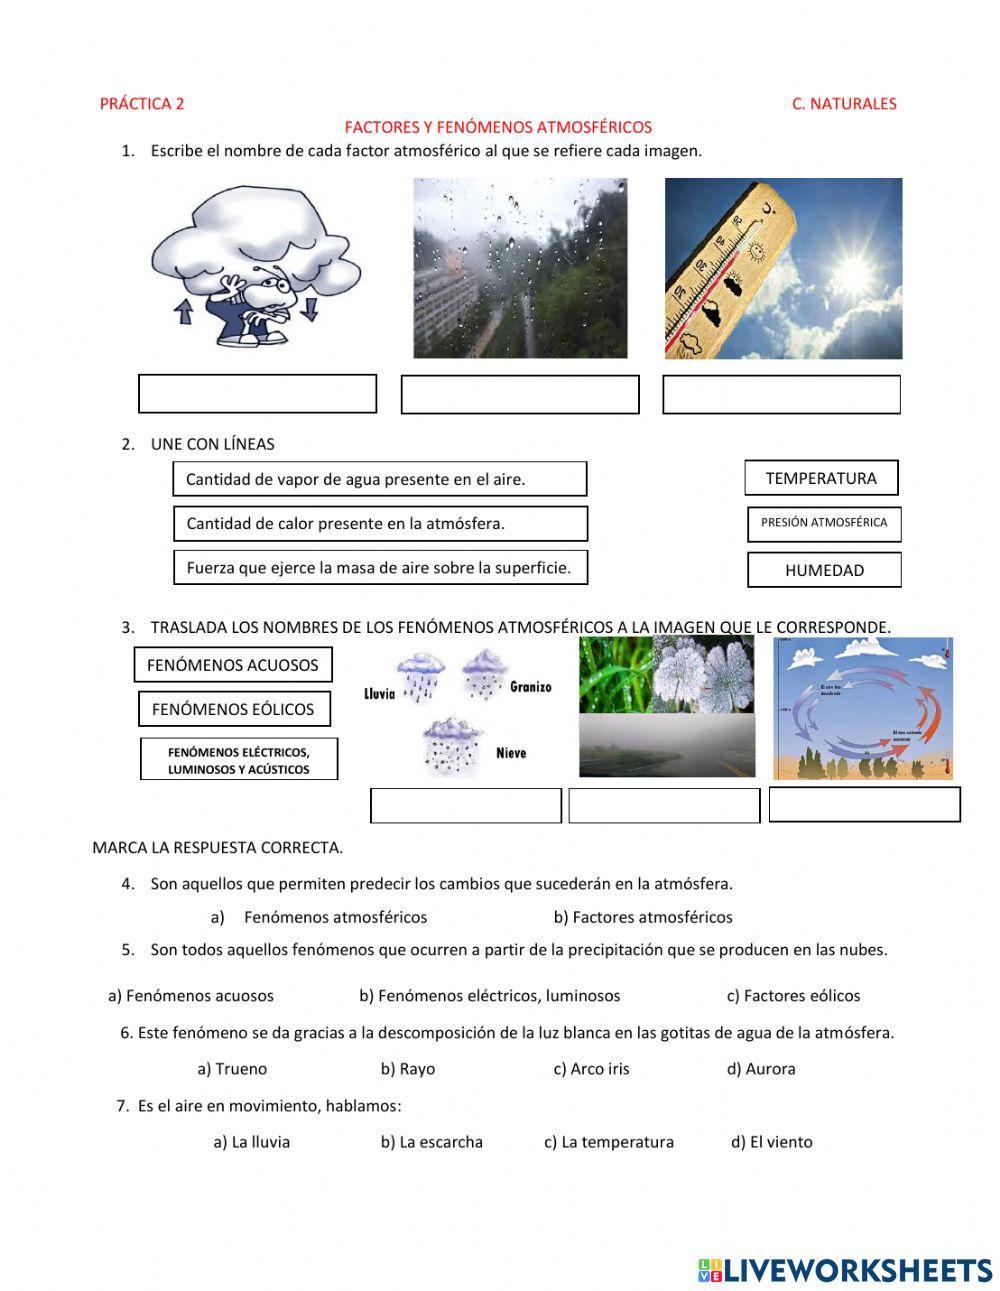 Factores y fenómenos atmosféricos